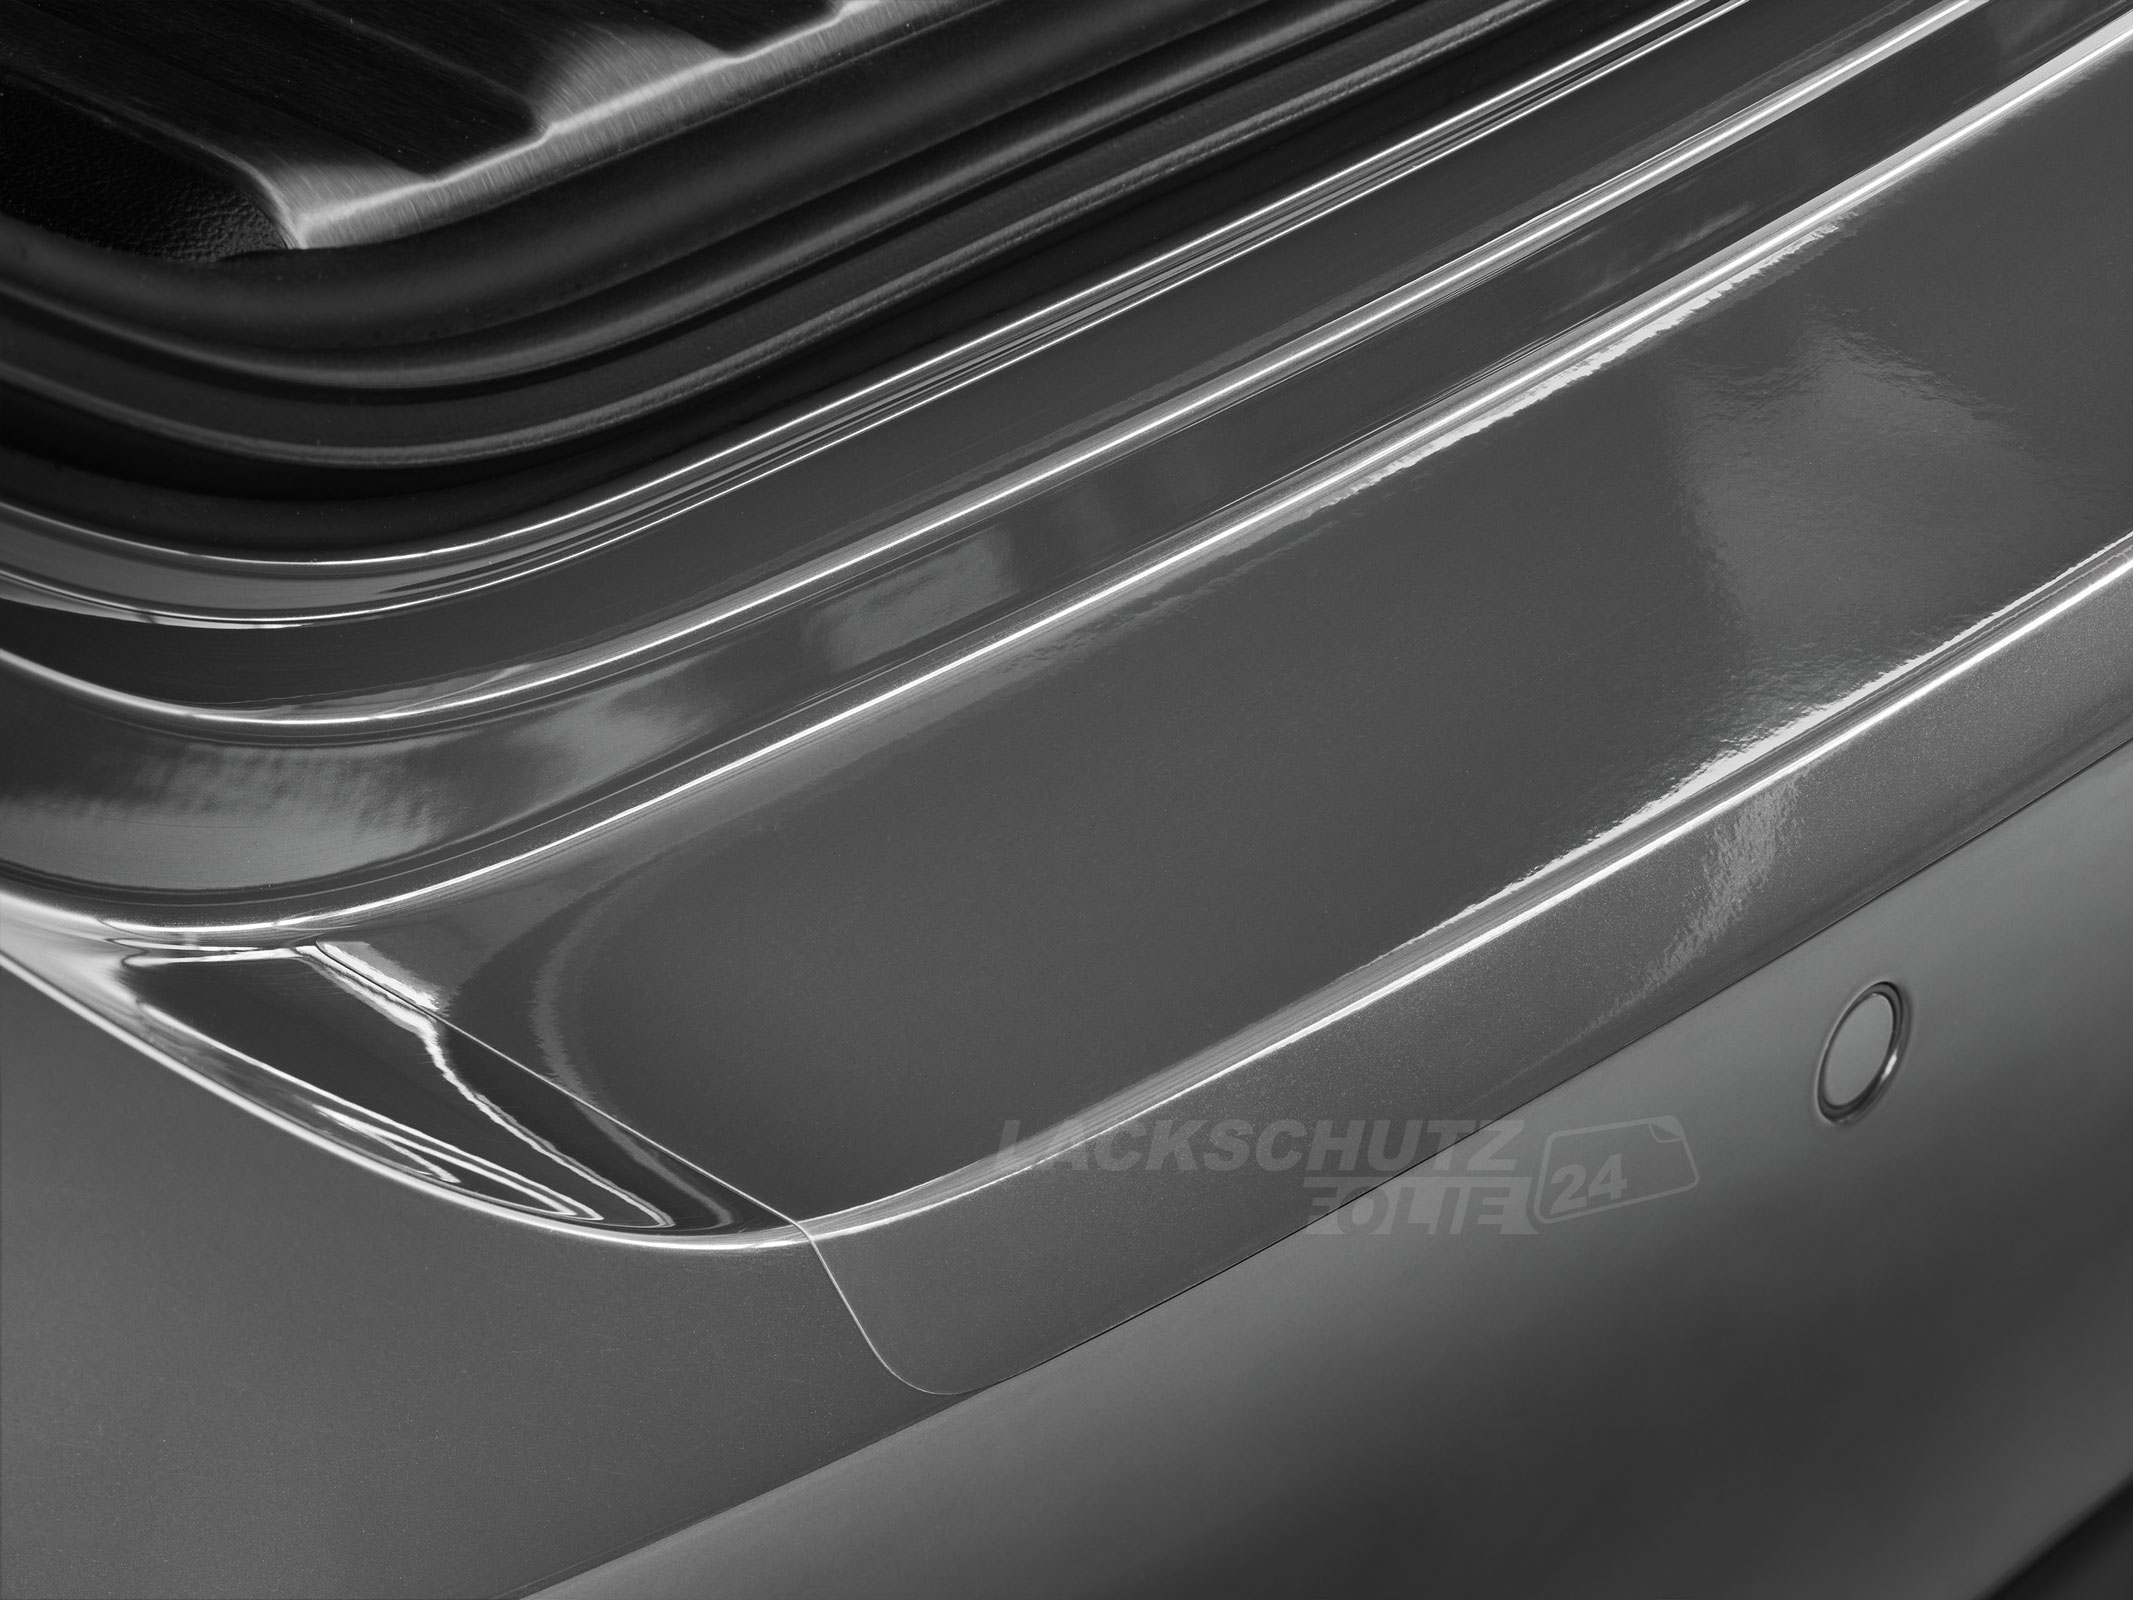 Ladekantenschutzfolie - Transparent Glatt Hochglänzend 150 µm stark für BMW X5 Typ F15, BJ 2013-10/2018